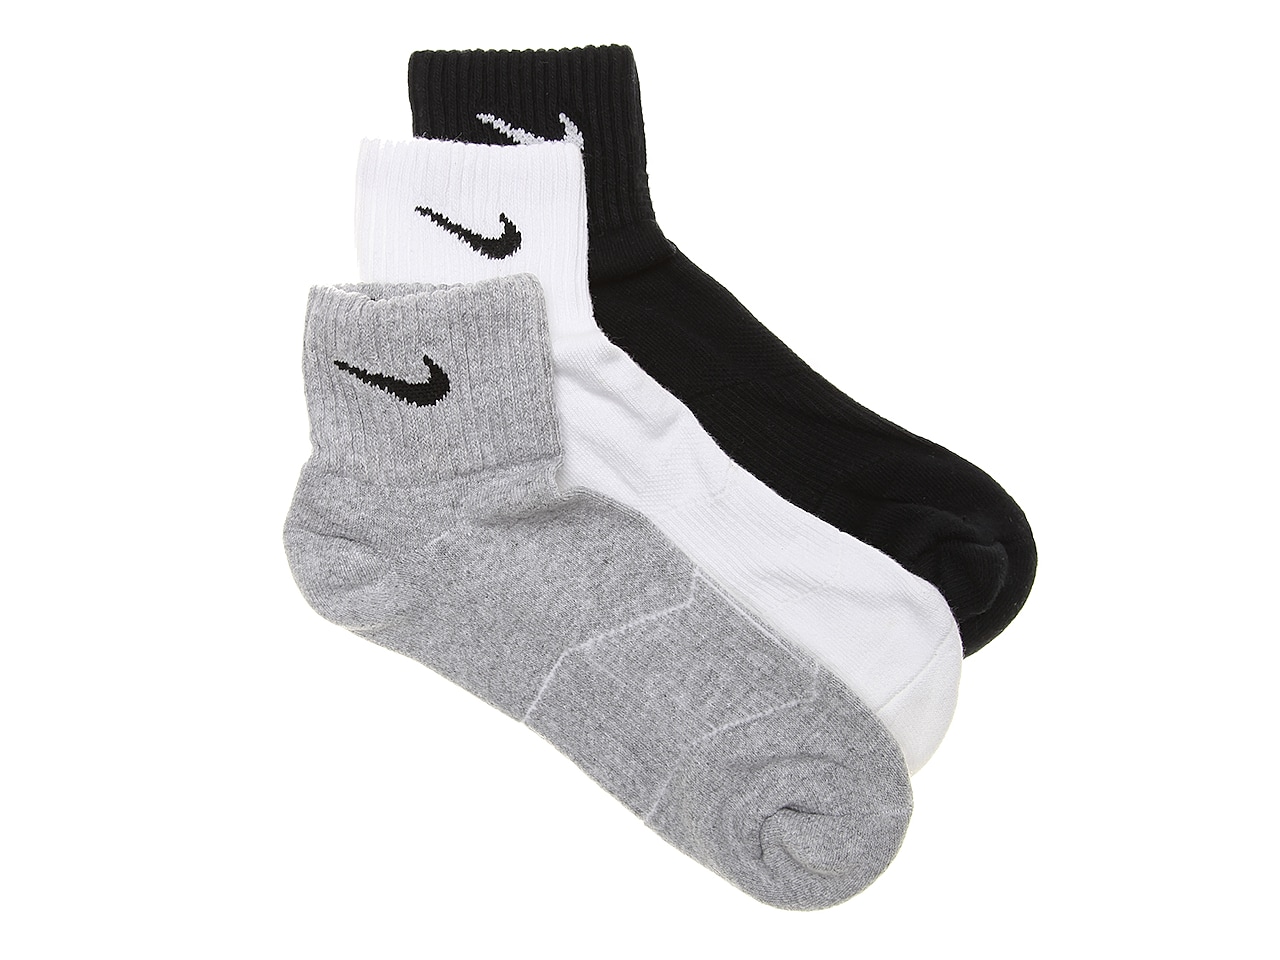 Nike Performance Cotton Men's Ankle Socks - 3 Pack Men's Handbags ...